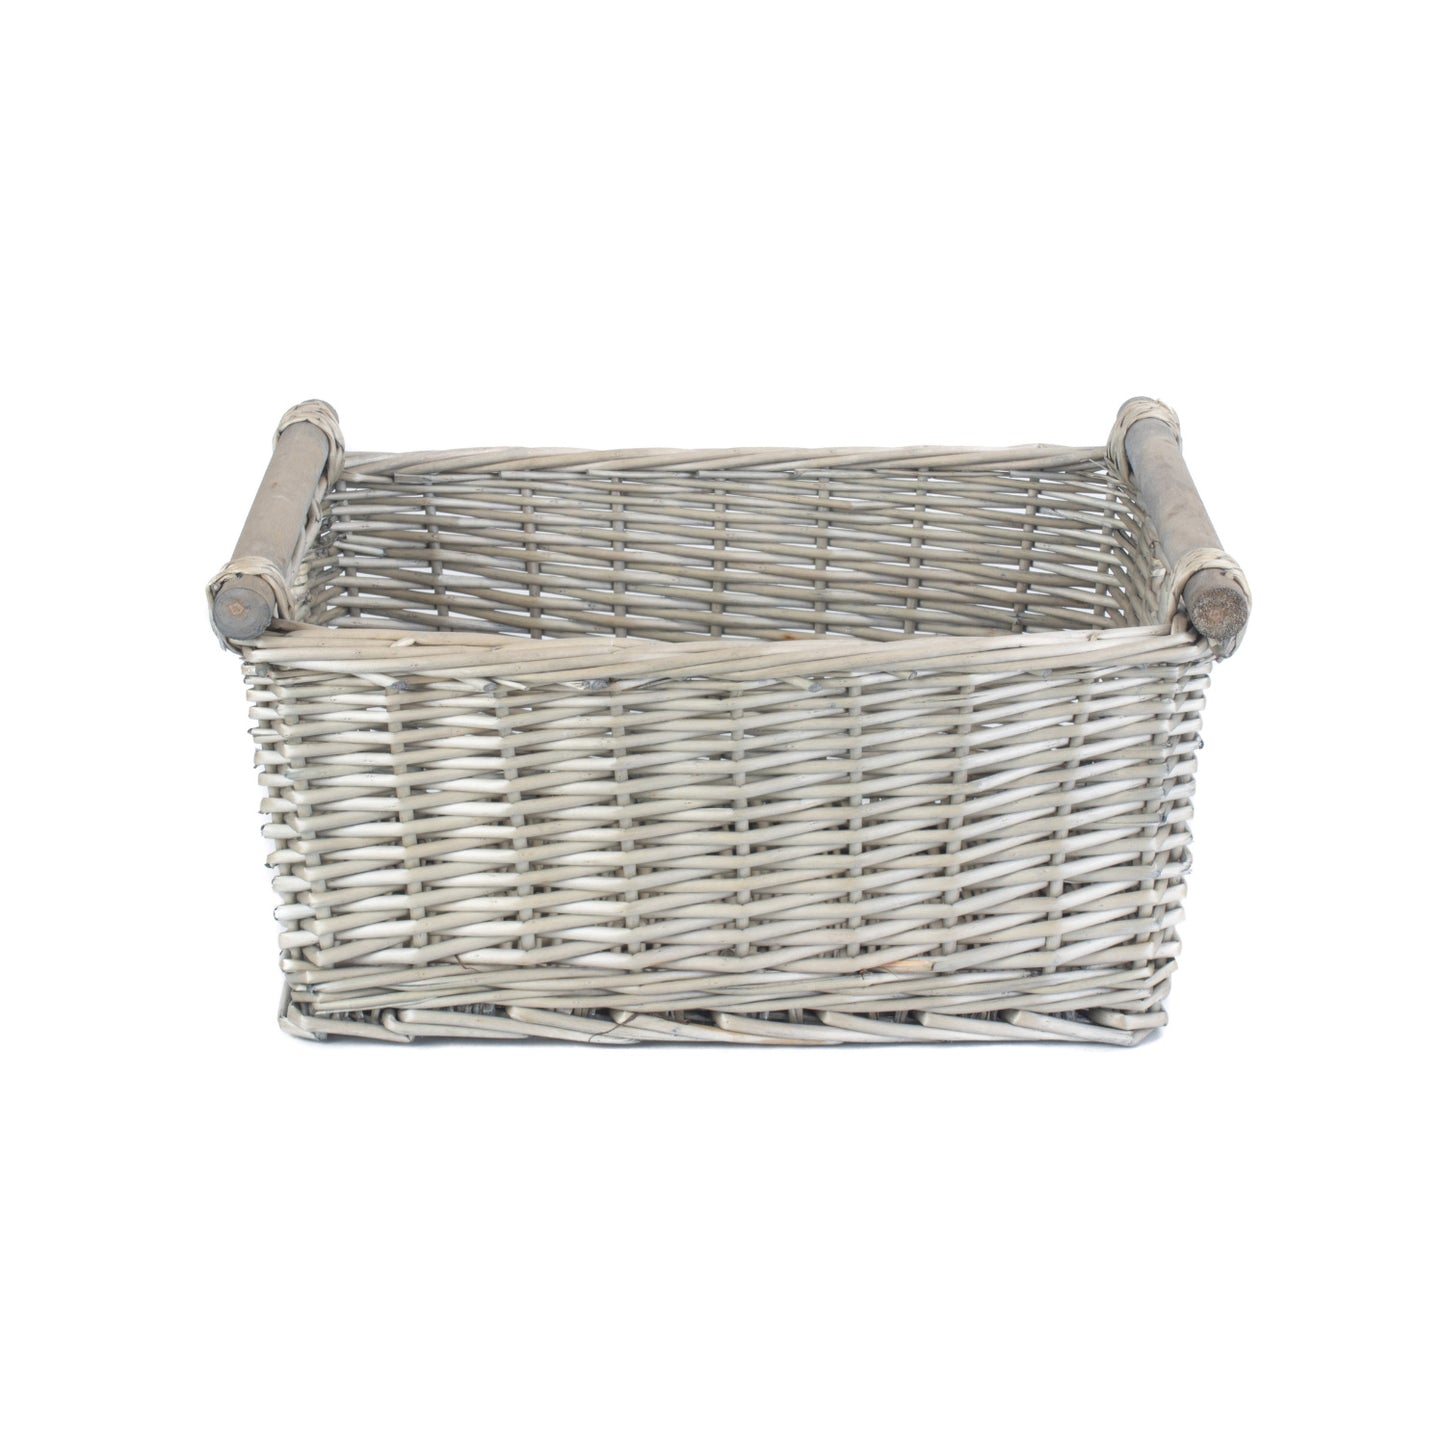 Large Antique Wash Wooden Handled Storage Basket